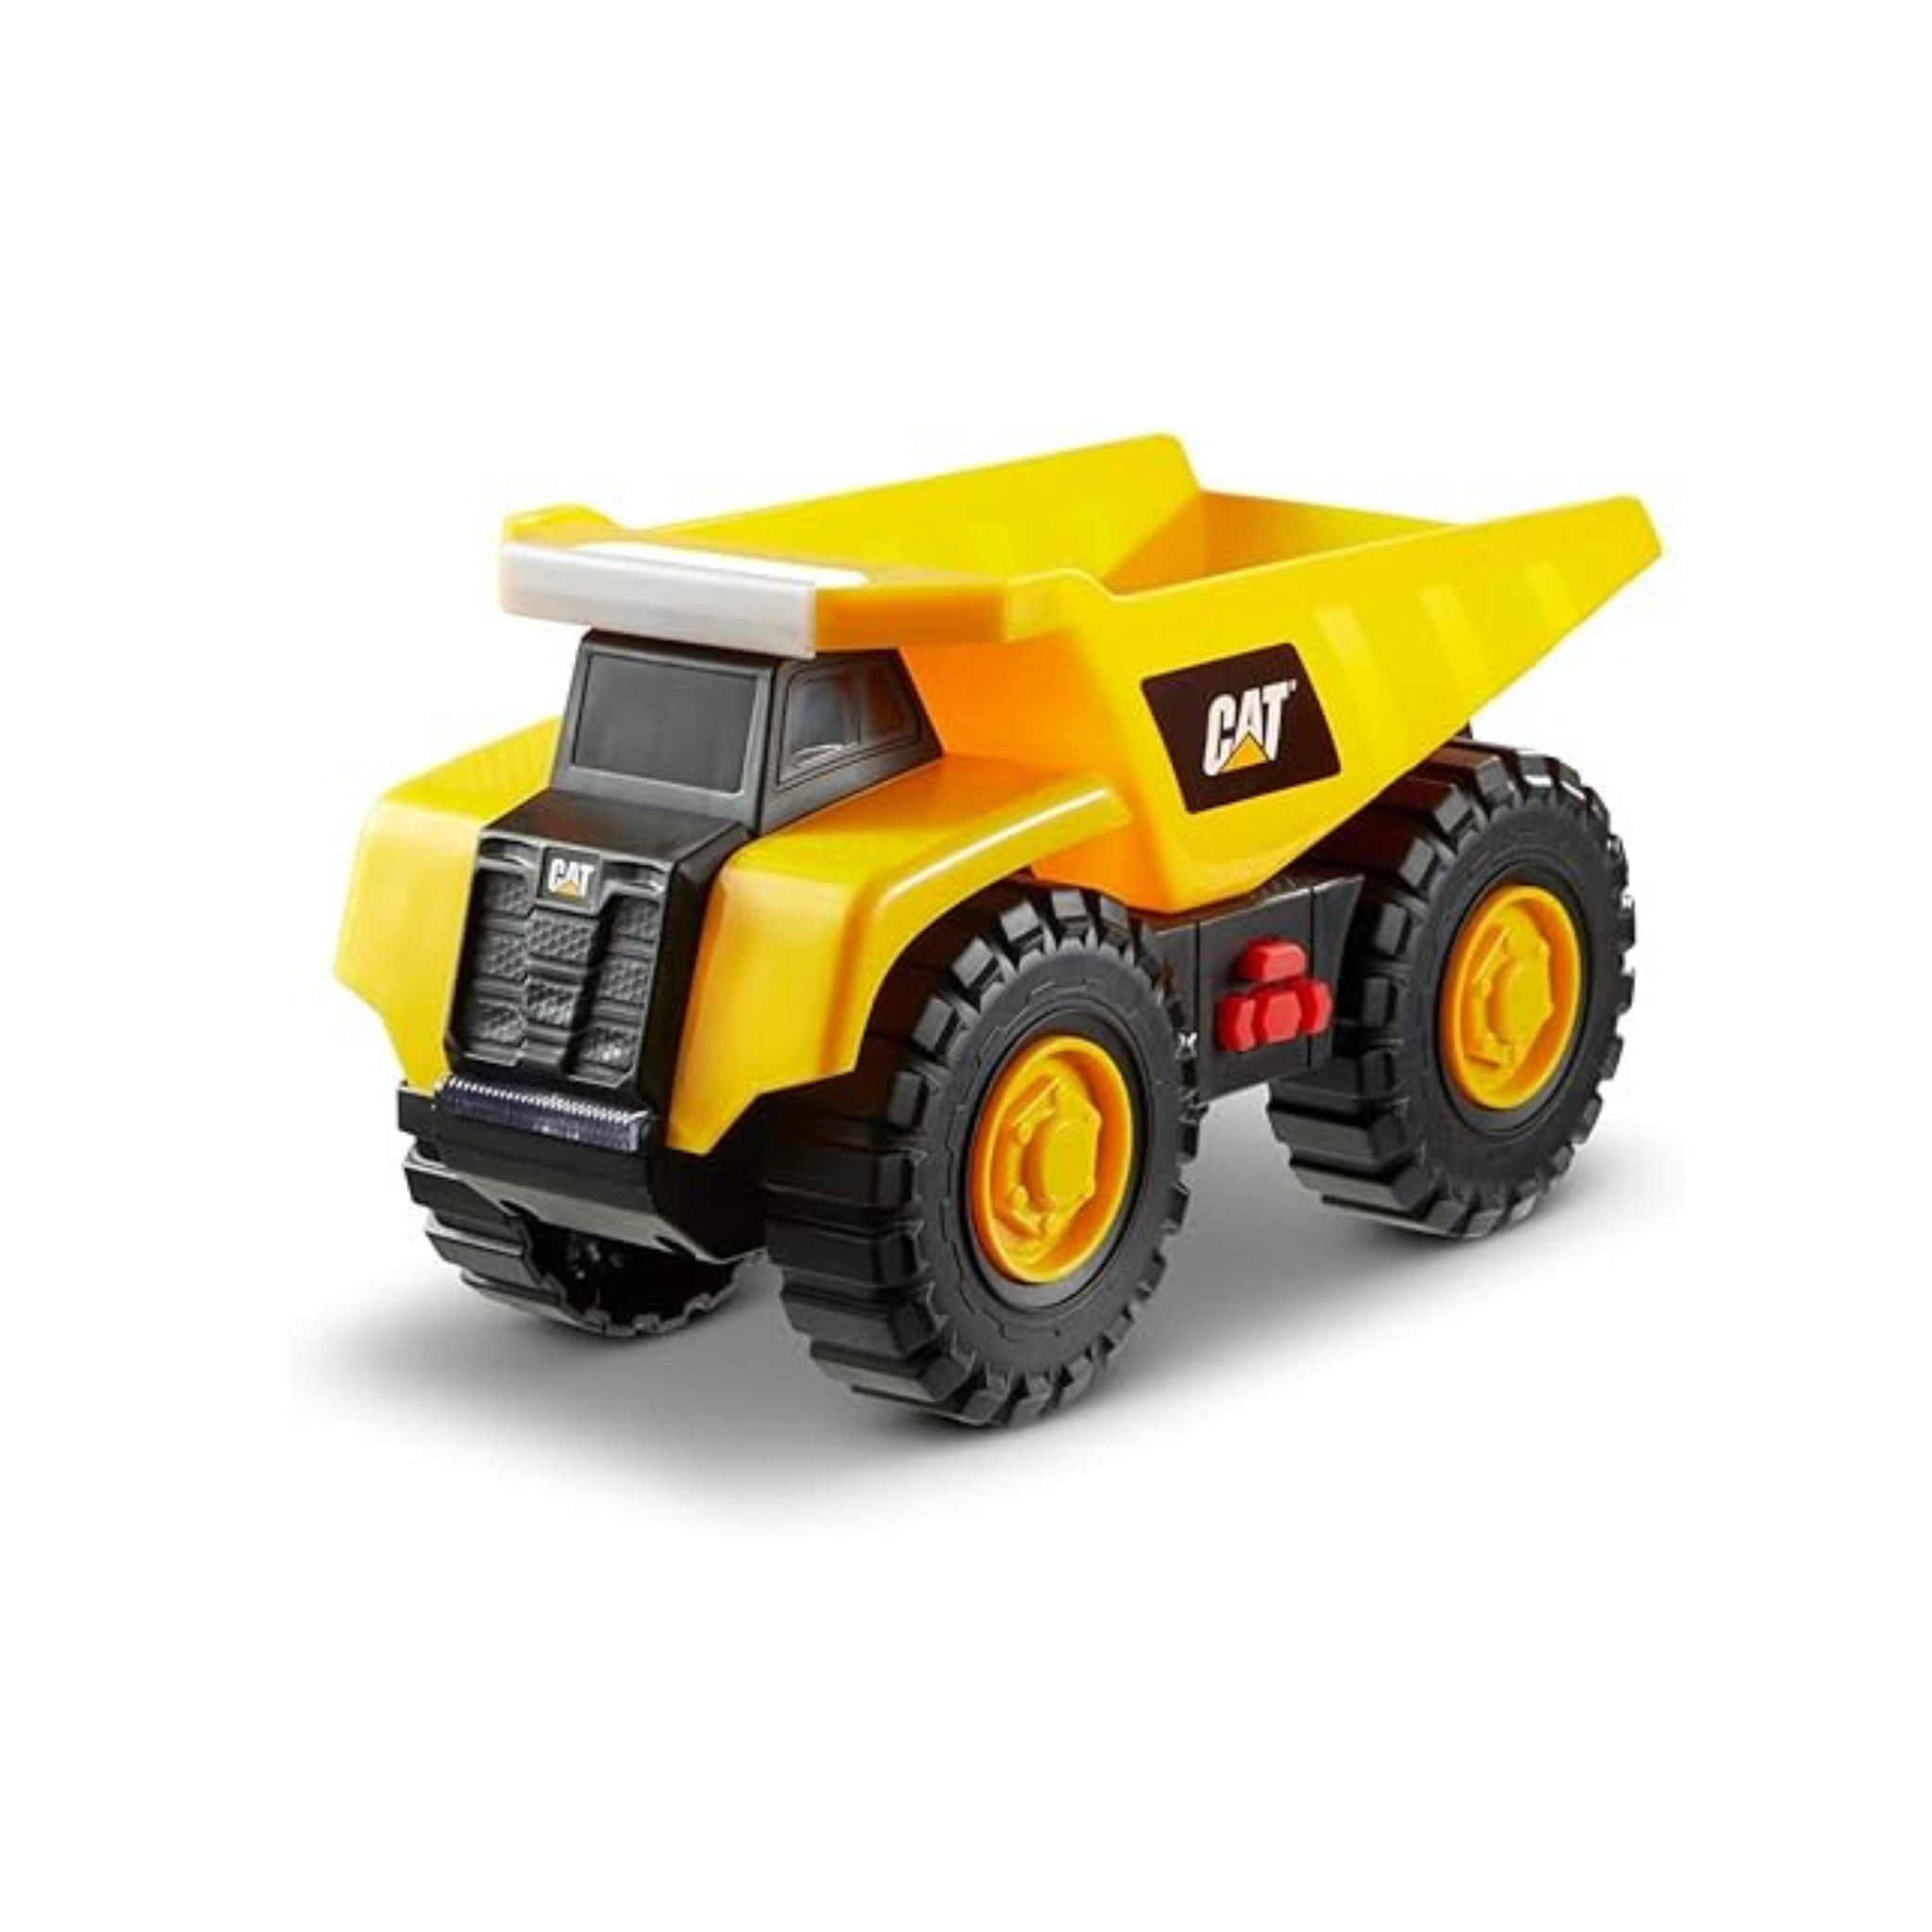 Cat Construction Tough Machines Toy Dump Truck